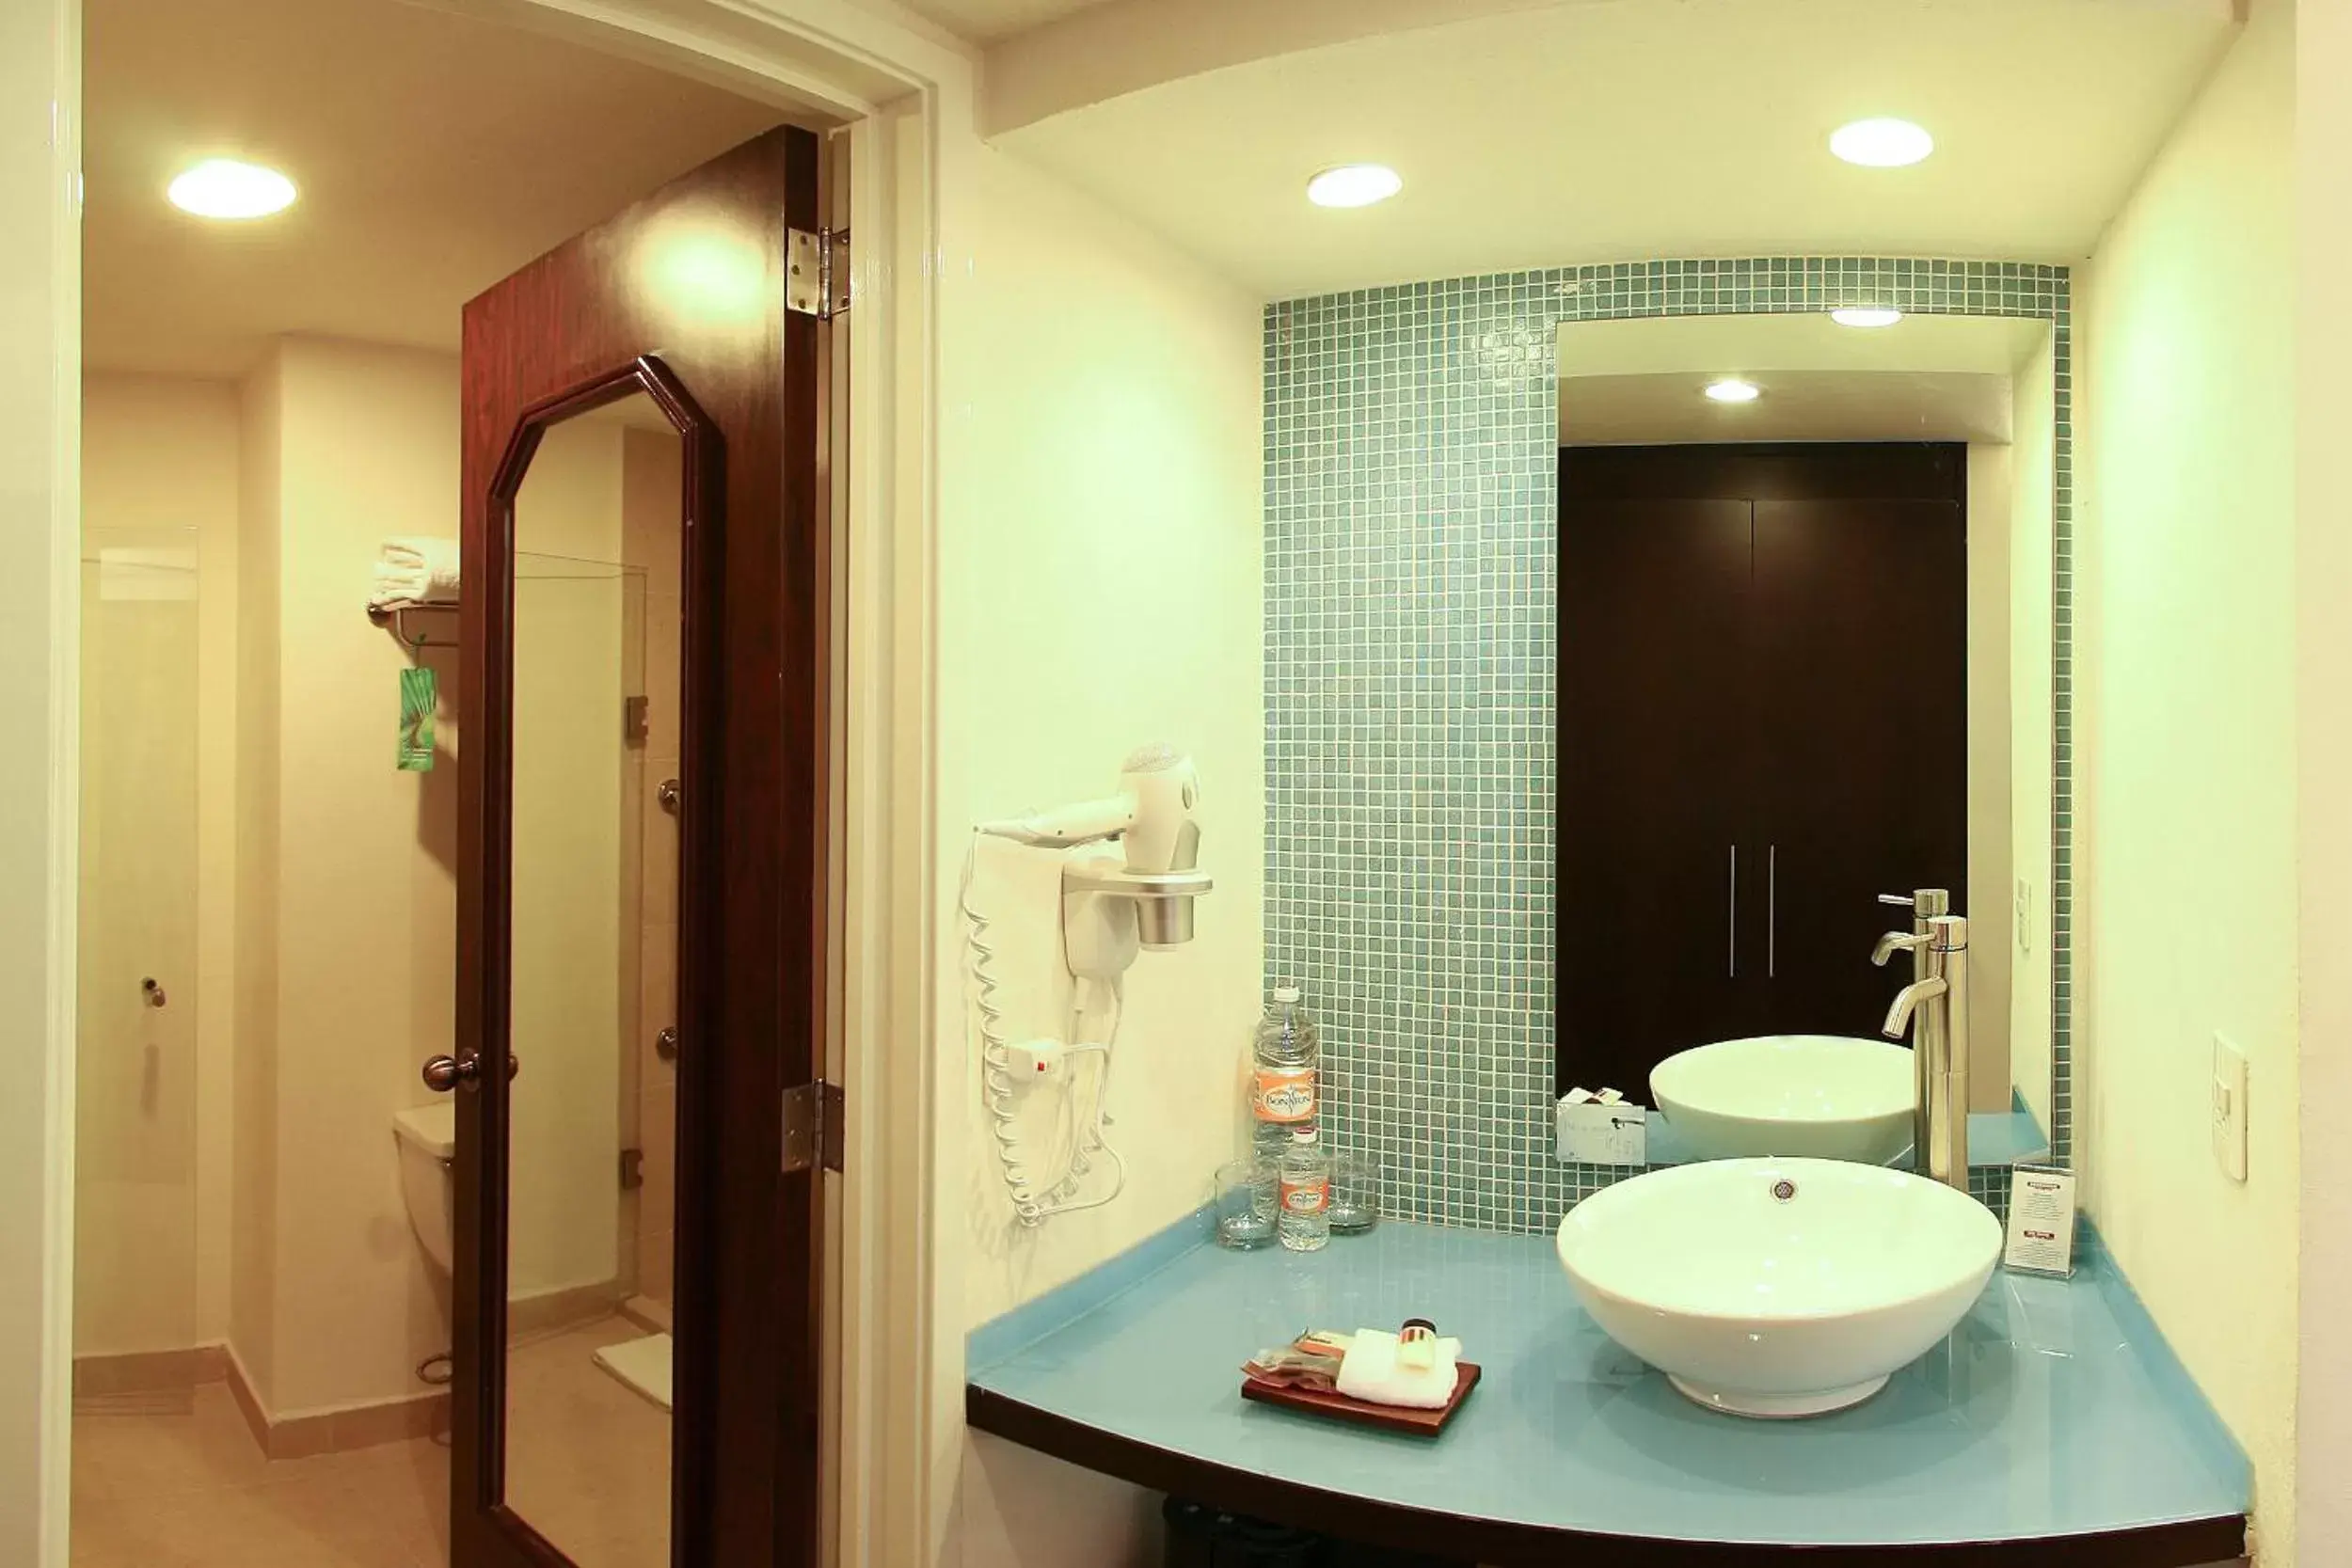 Photo of the whole room, Bathroom in Fiesta Inn Xalapa